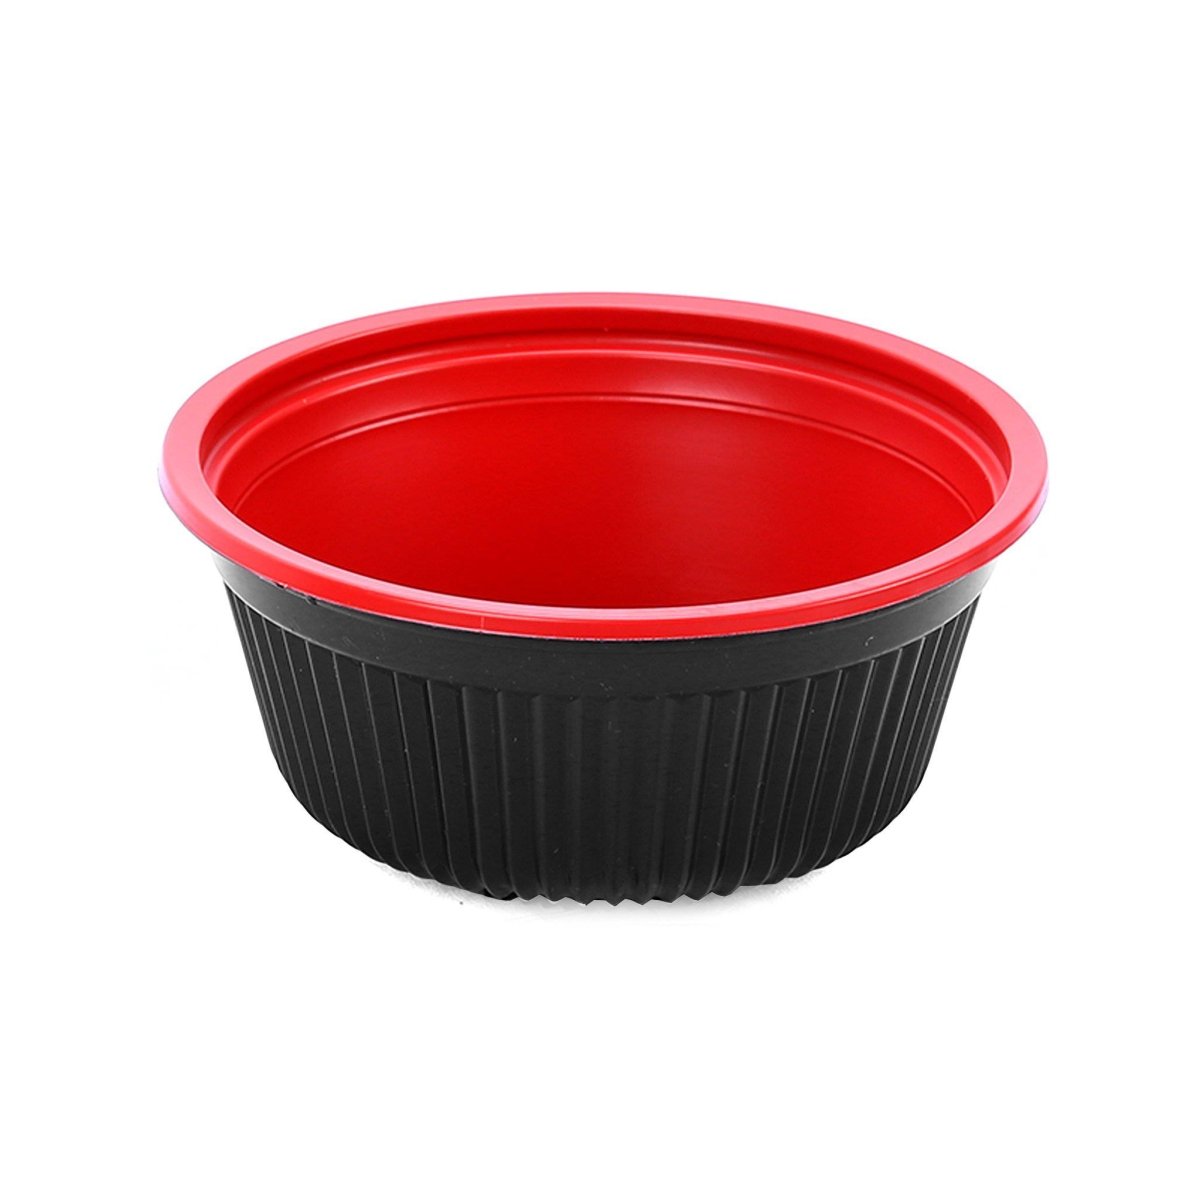 Red & Black Soup Bowl 700 cc with Lids 200 Pieces - hotpackwebstore.com - Soup Bowls